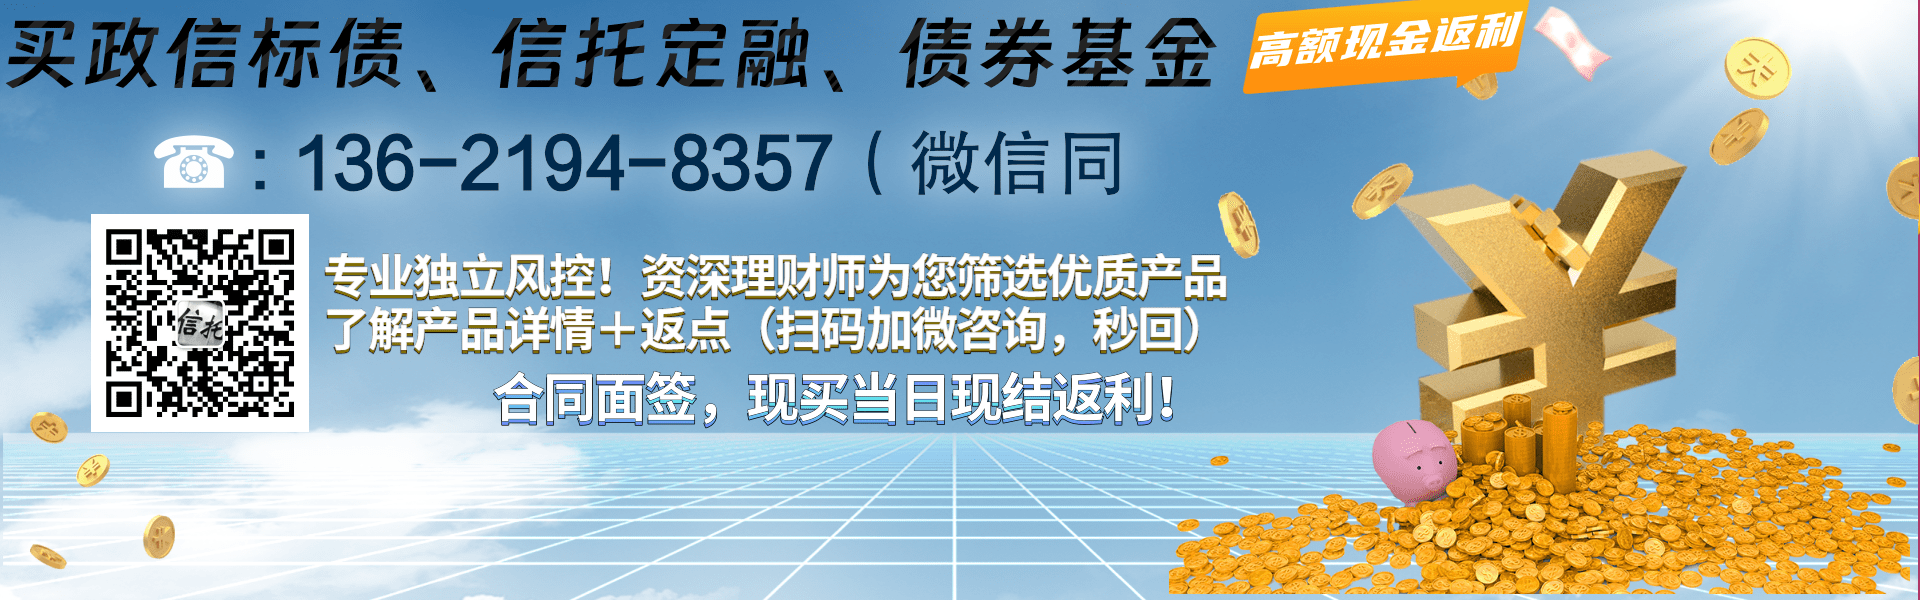 央企信托-93号江苏泰兴政信集合资金信托计划